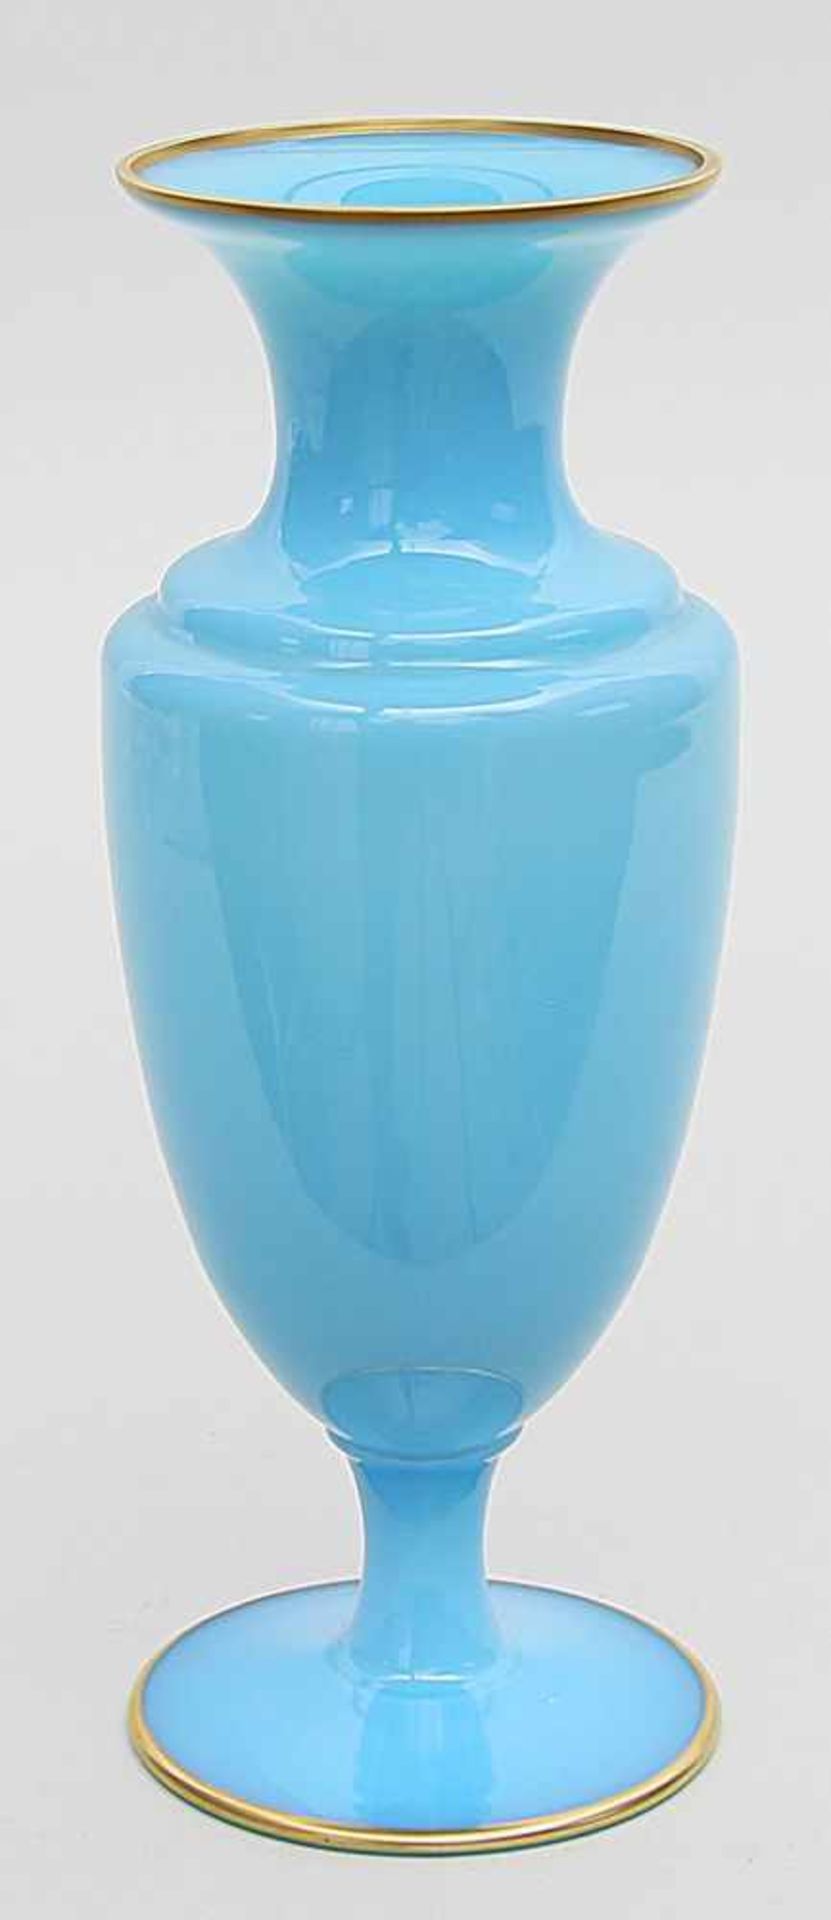 Vase, Cristal Sèvres.Türkisfarbenes Milchglas. Balusterform, gefußt. Goldränder. Ätzsign. Cristal